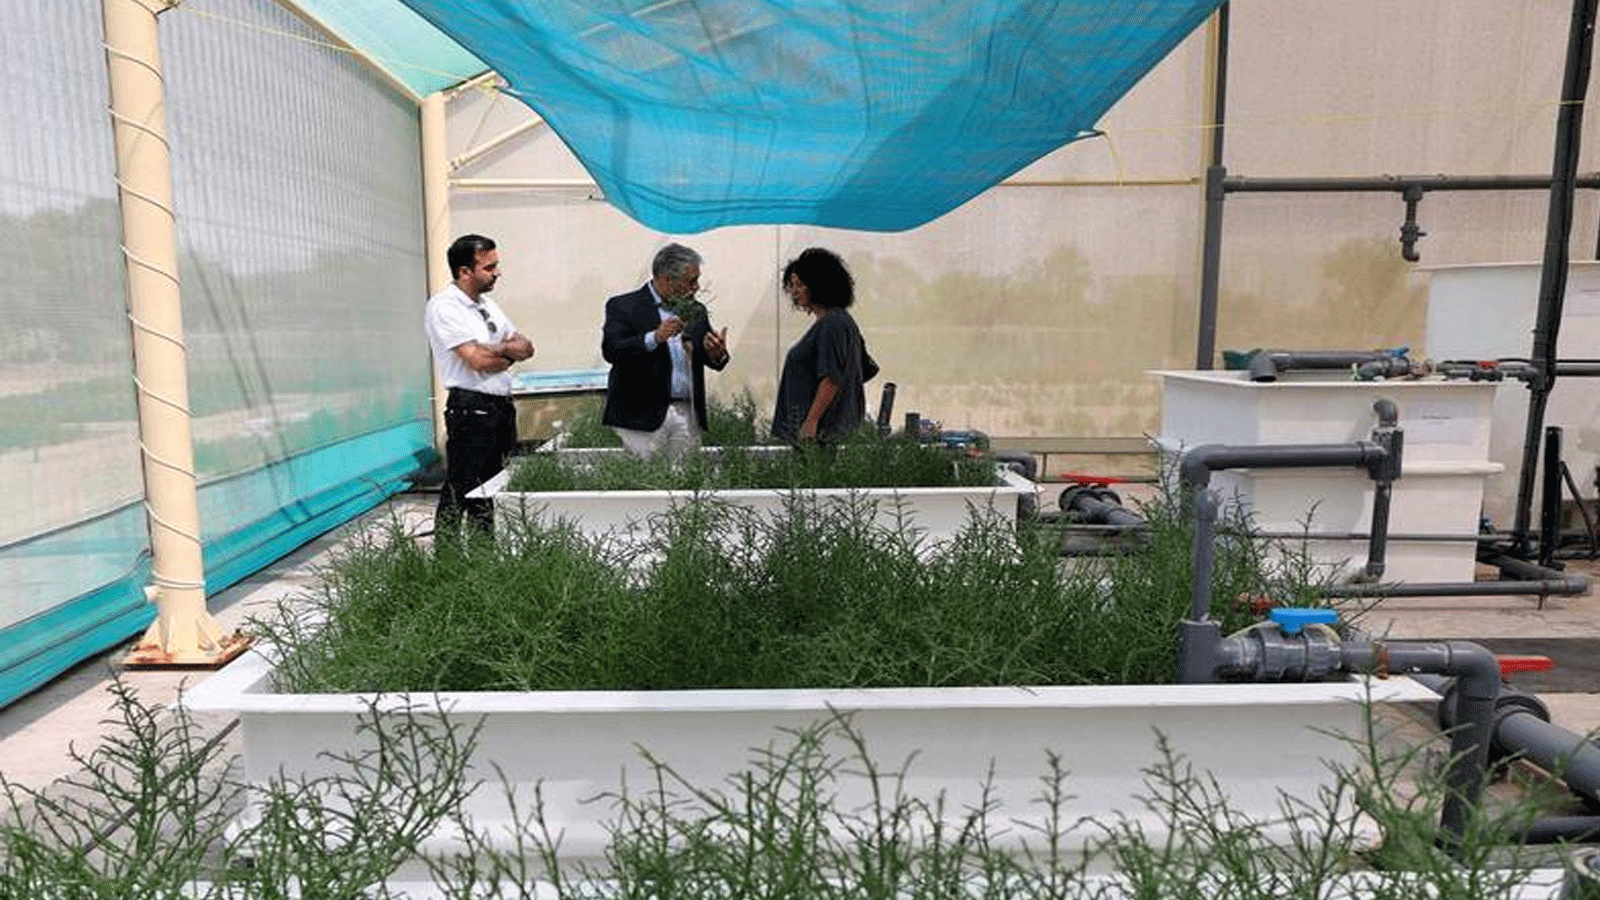 نباتات الساليكورنيا في المركز الدولي للزراعة الملحية في دبي.((ICBA))